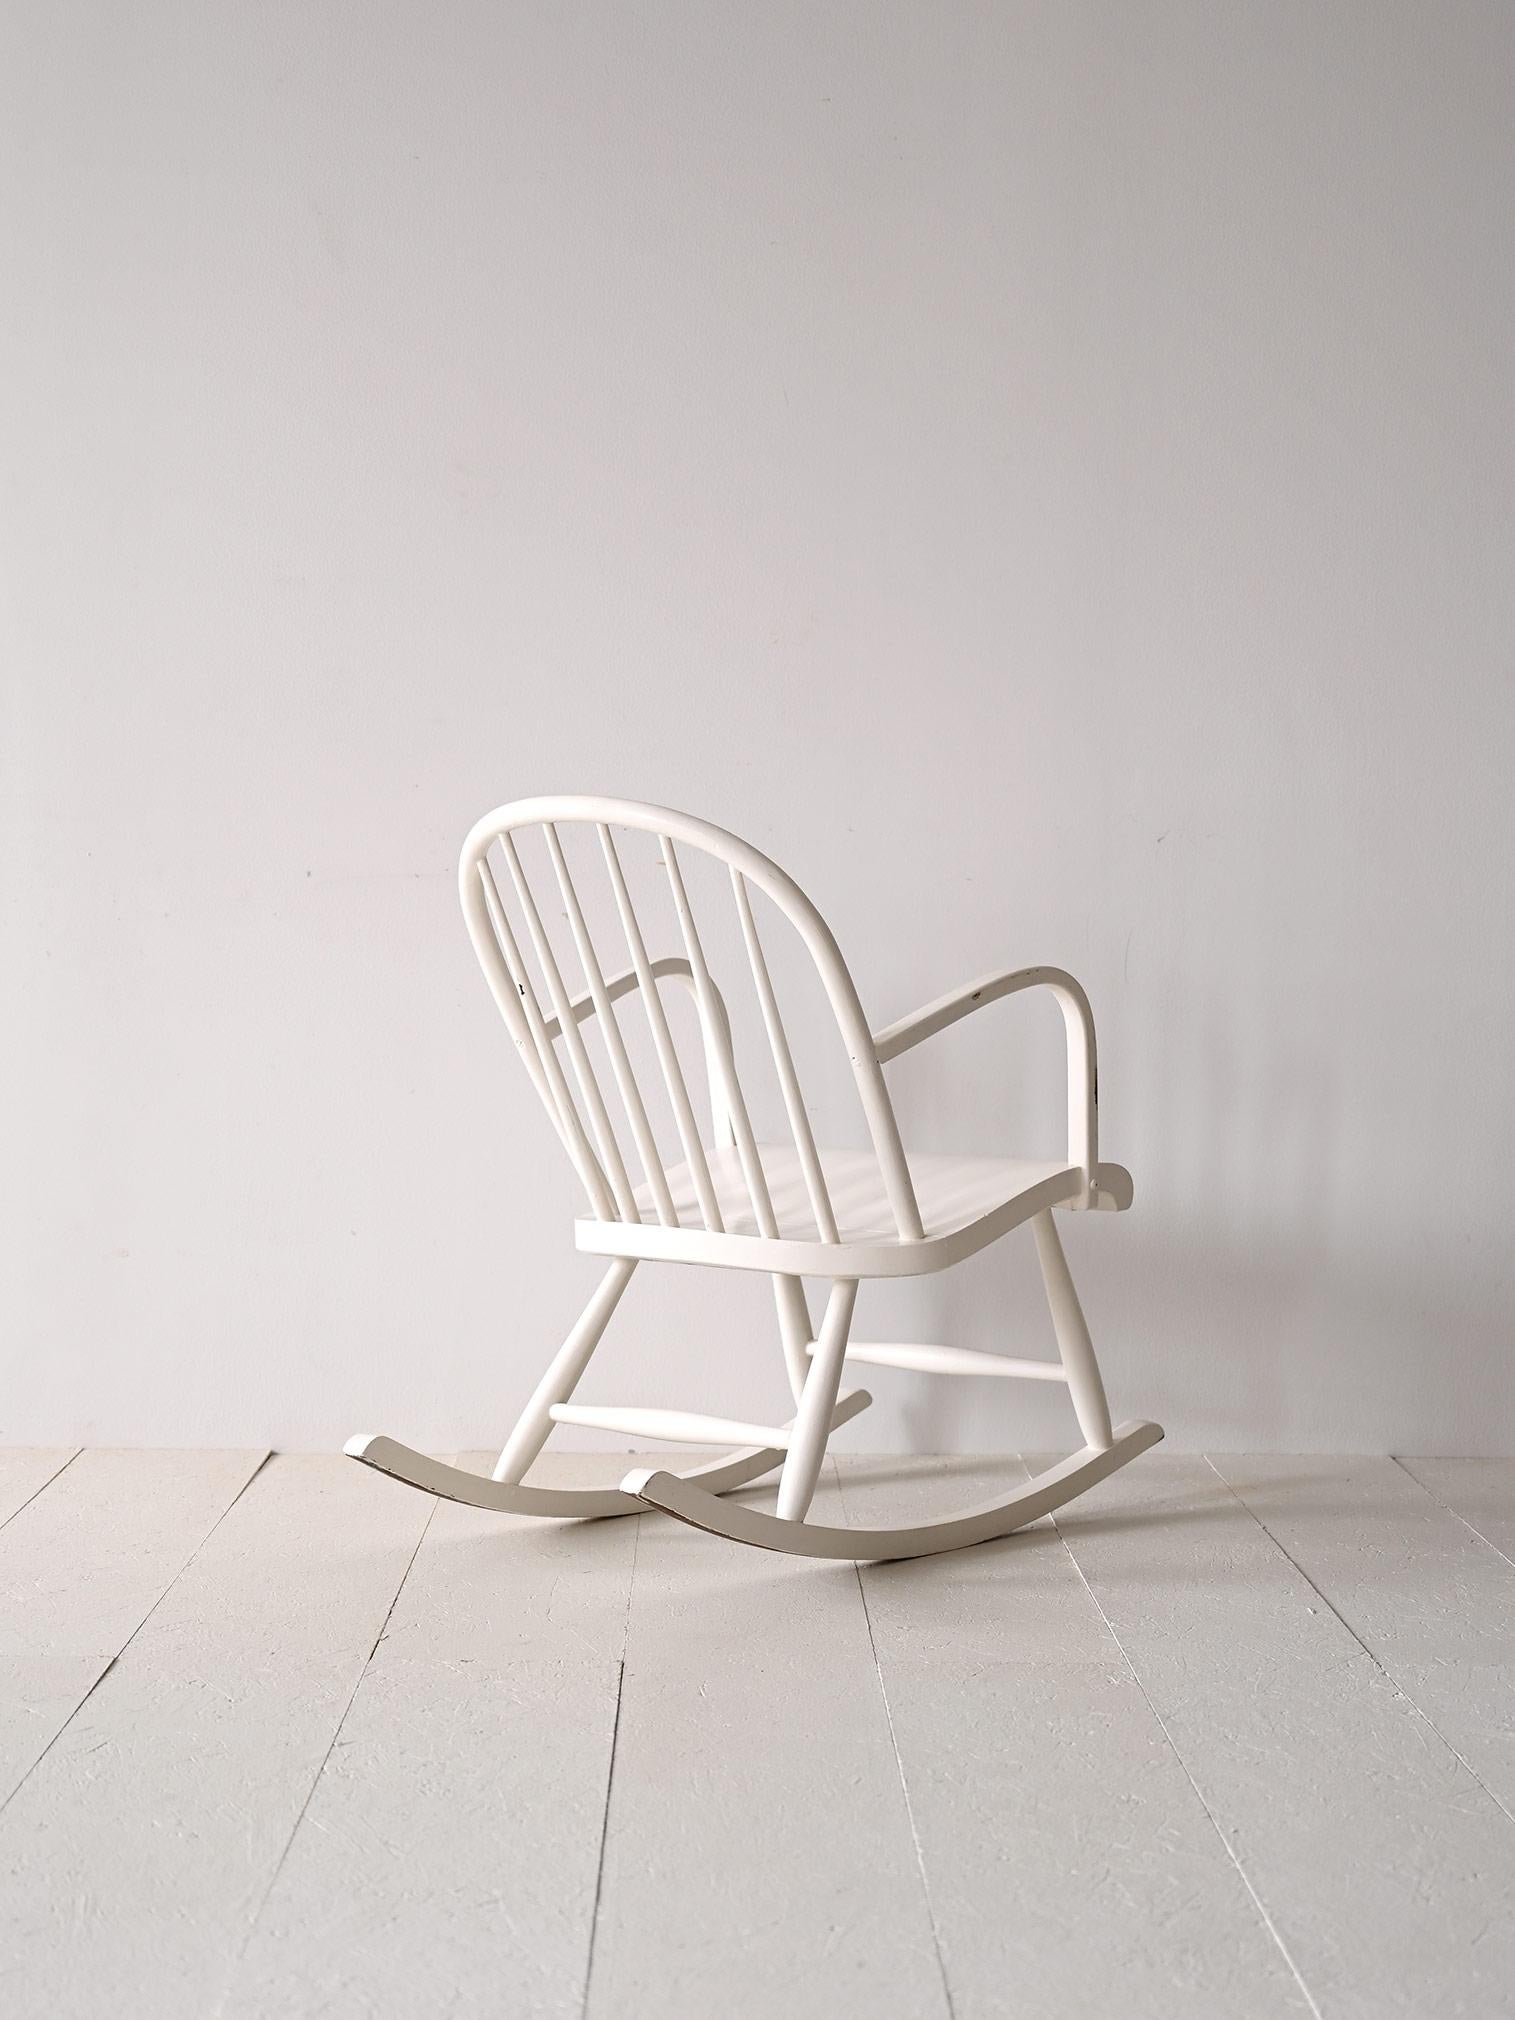 Chaise à bascule scandinave en bois peint en blanc.

Un meuble qui rappelle la forme typique des chaises scandinaves classiques en bois 